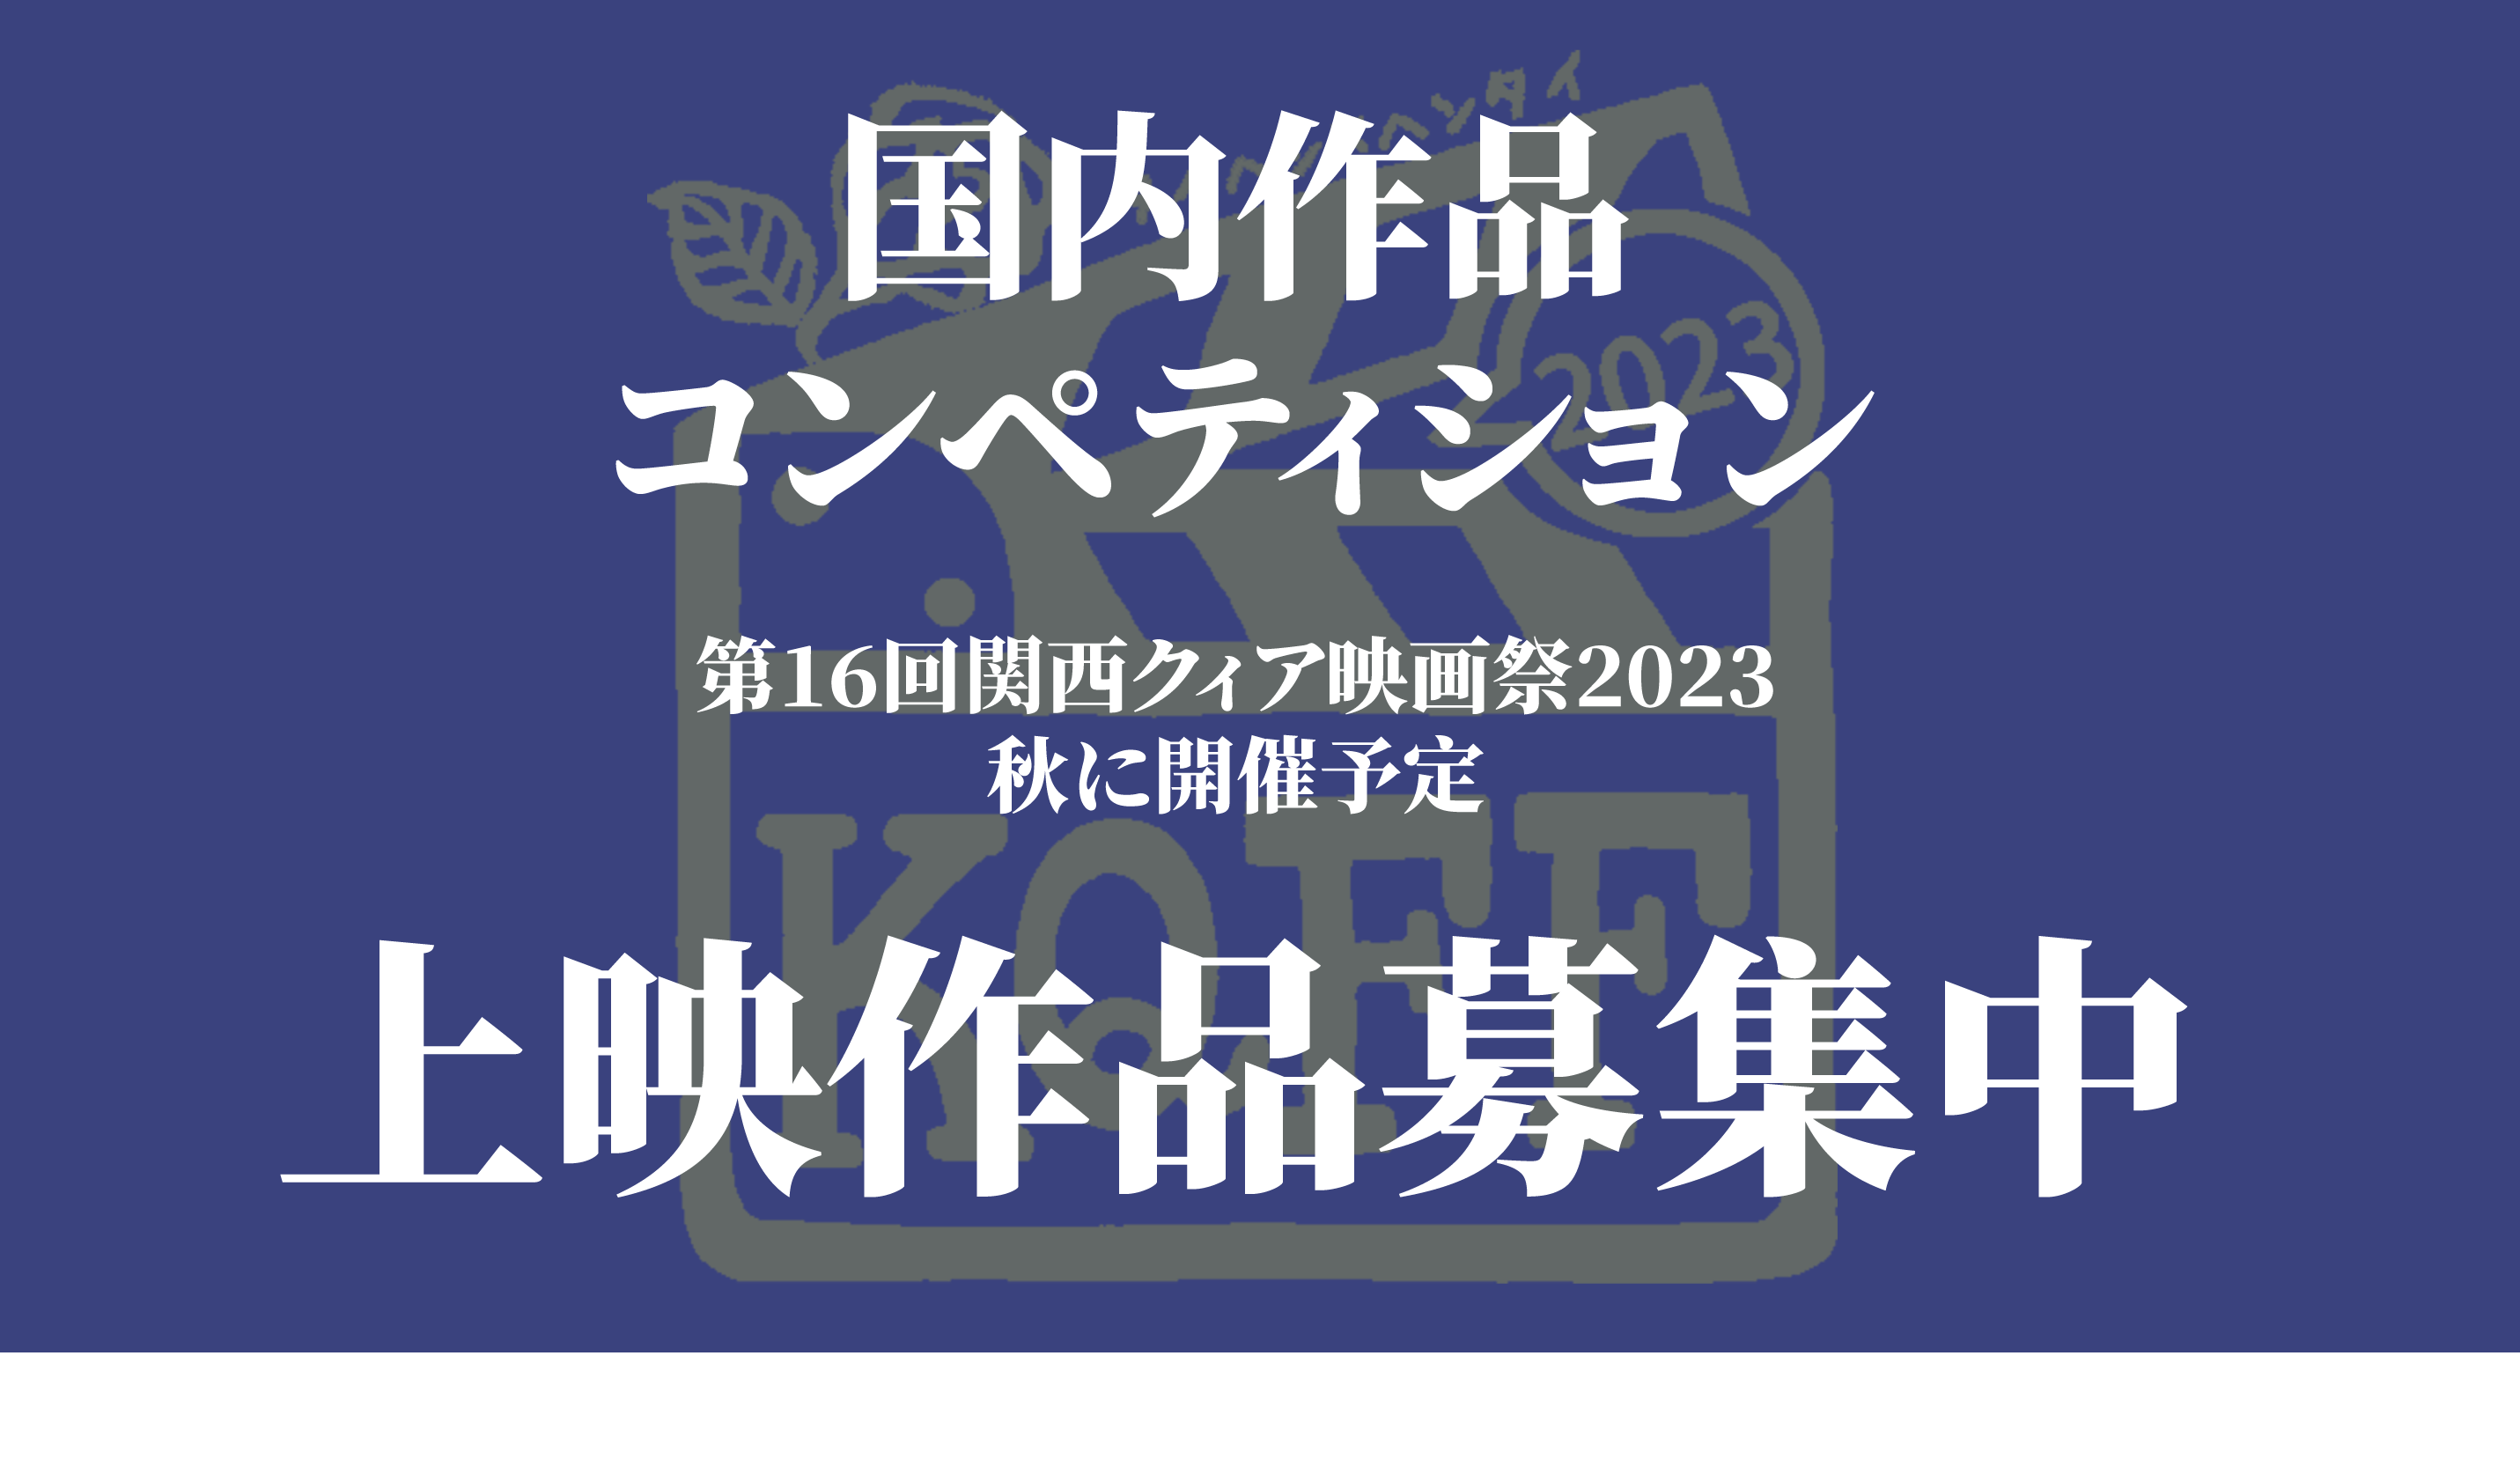 国内作品コンペティション
第16回関西クィア映画祭2023
秋に開催予定
上映作品募集中